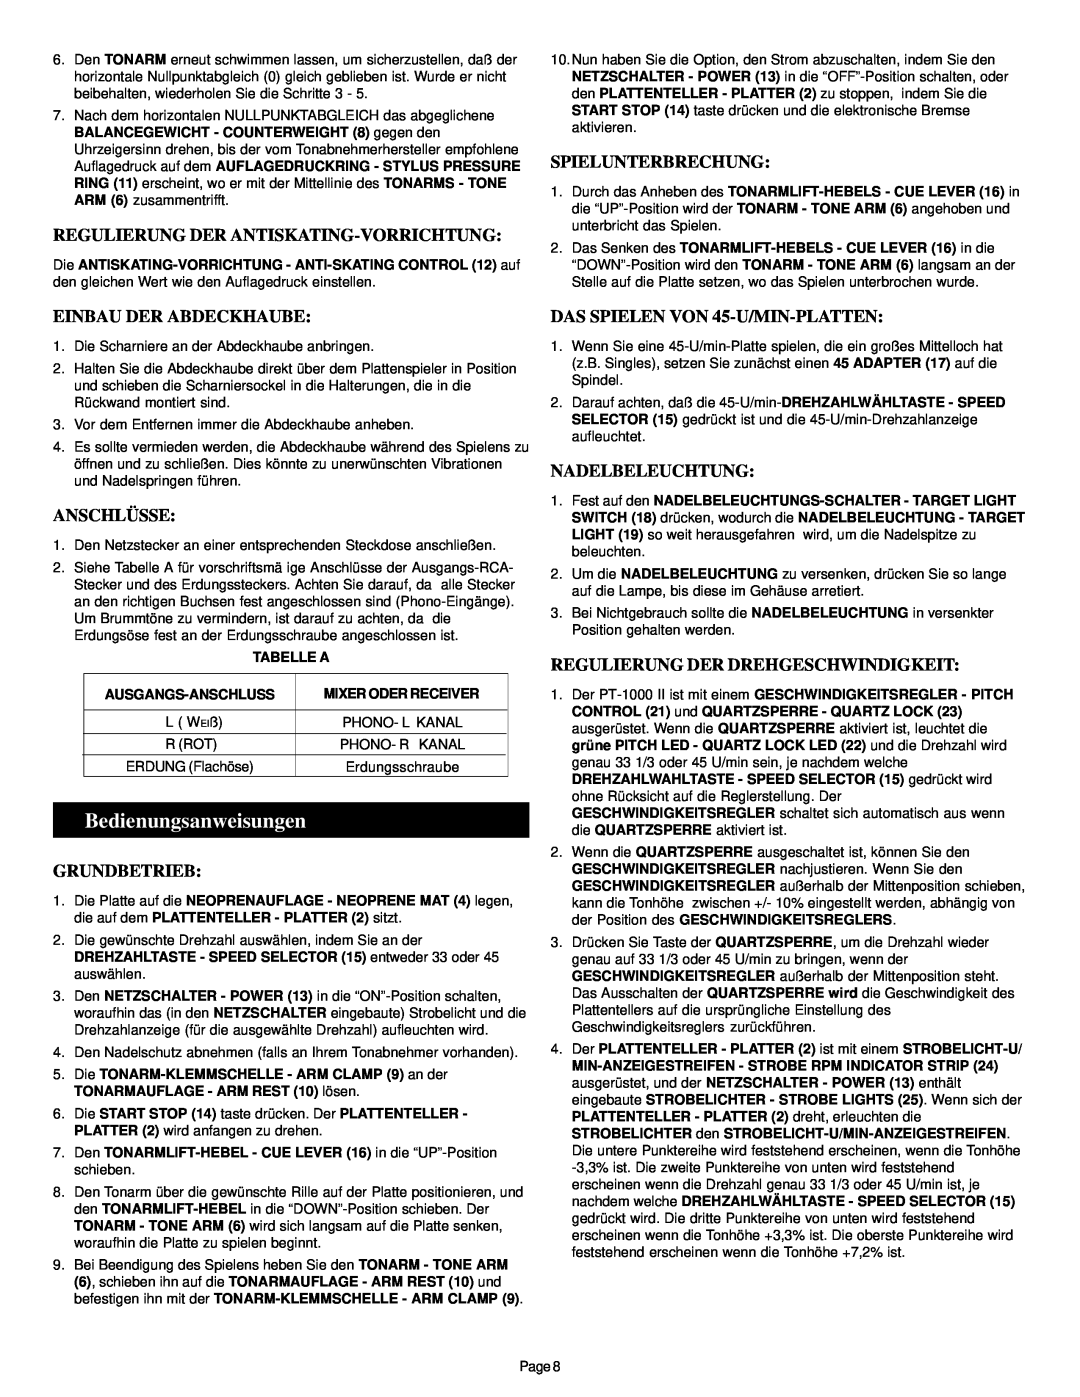 Gemini PT-1000 II manual Bedienungsanweisungen, Regulierung Der Antiskating-Vorrichtung, Spielunterbrechung, Anschlüsse 